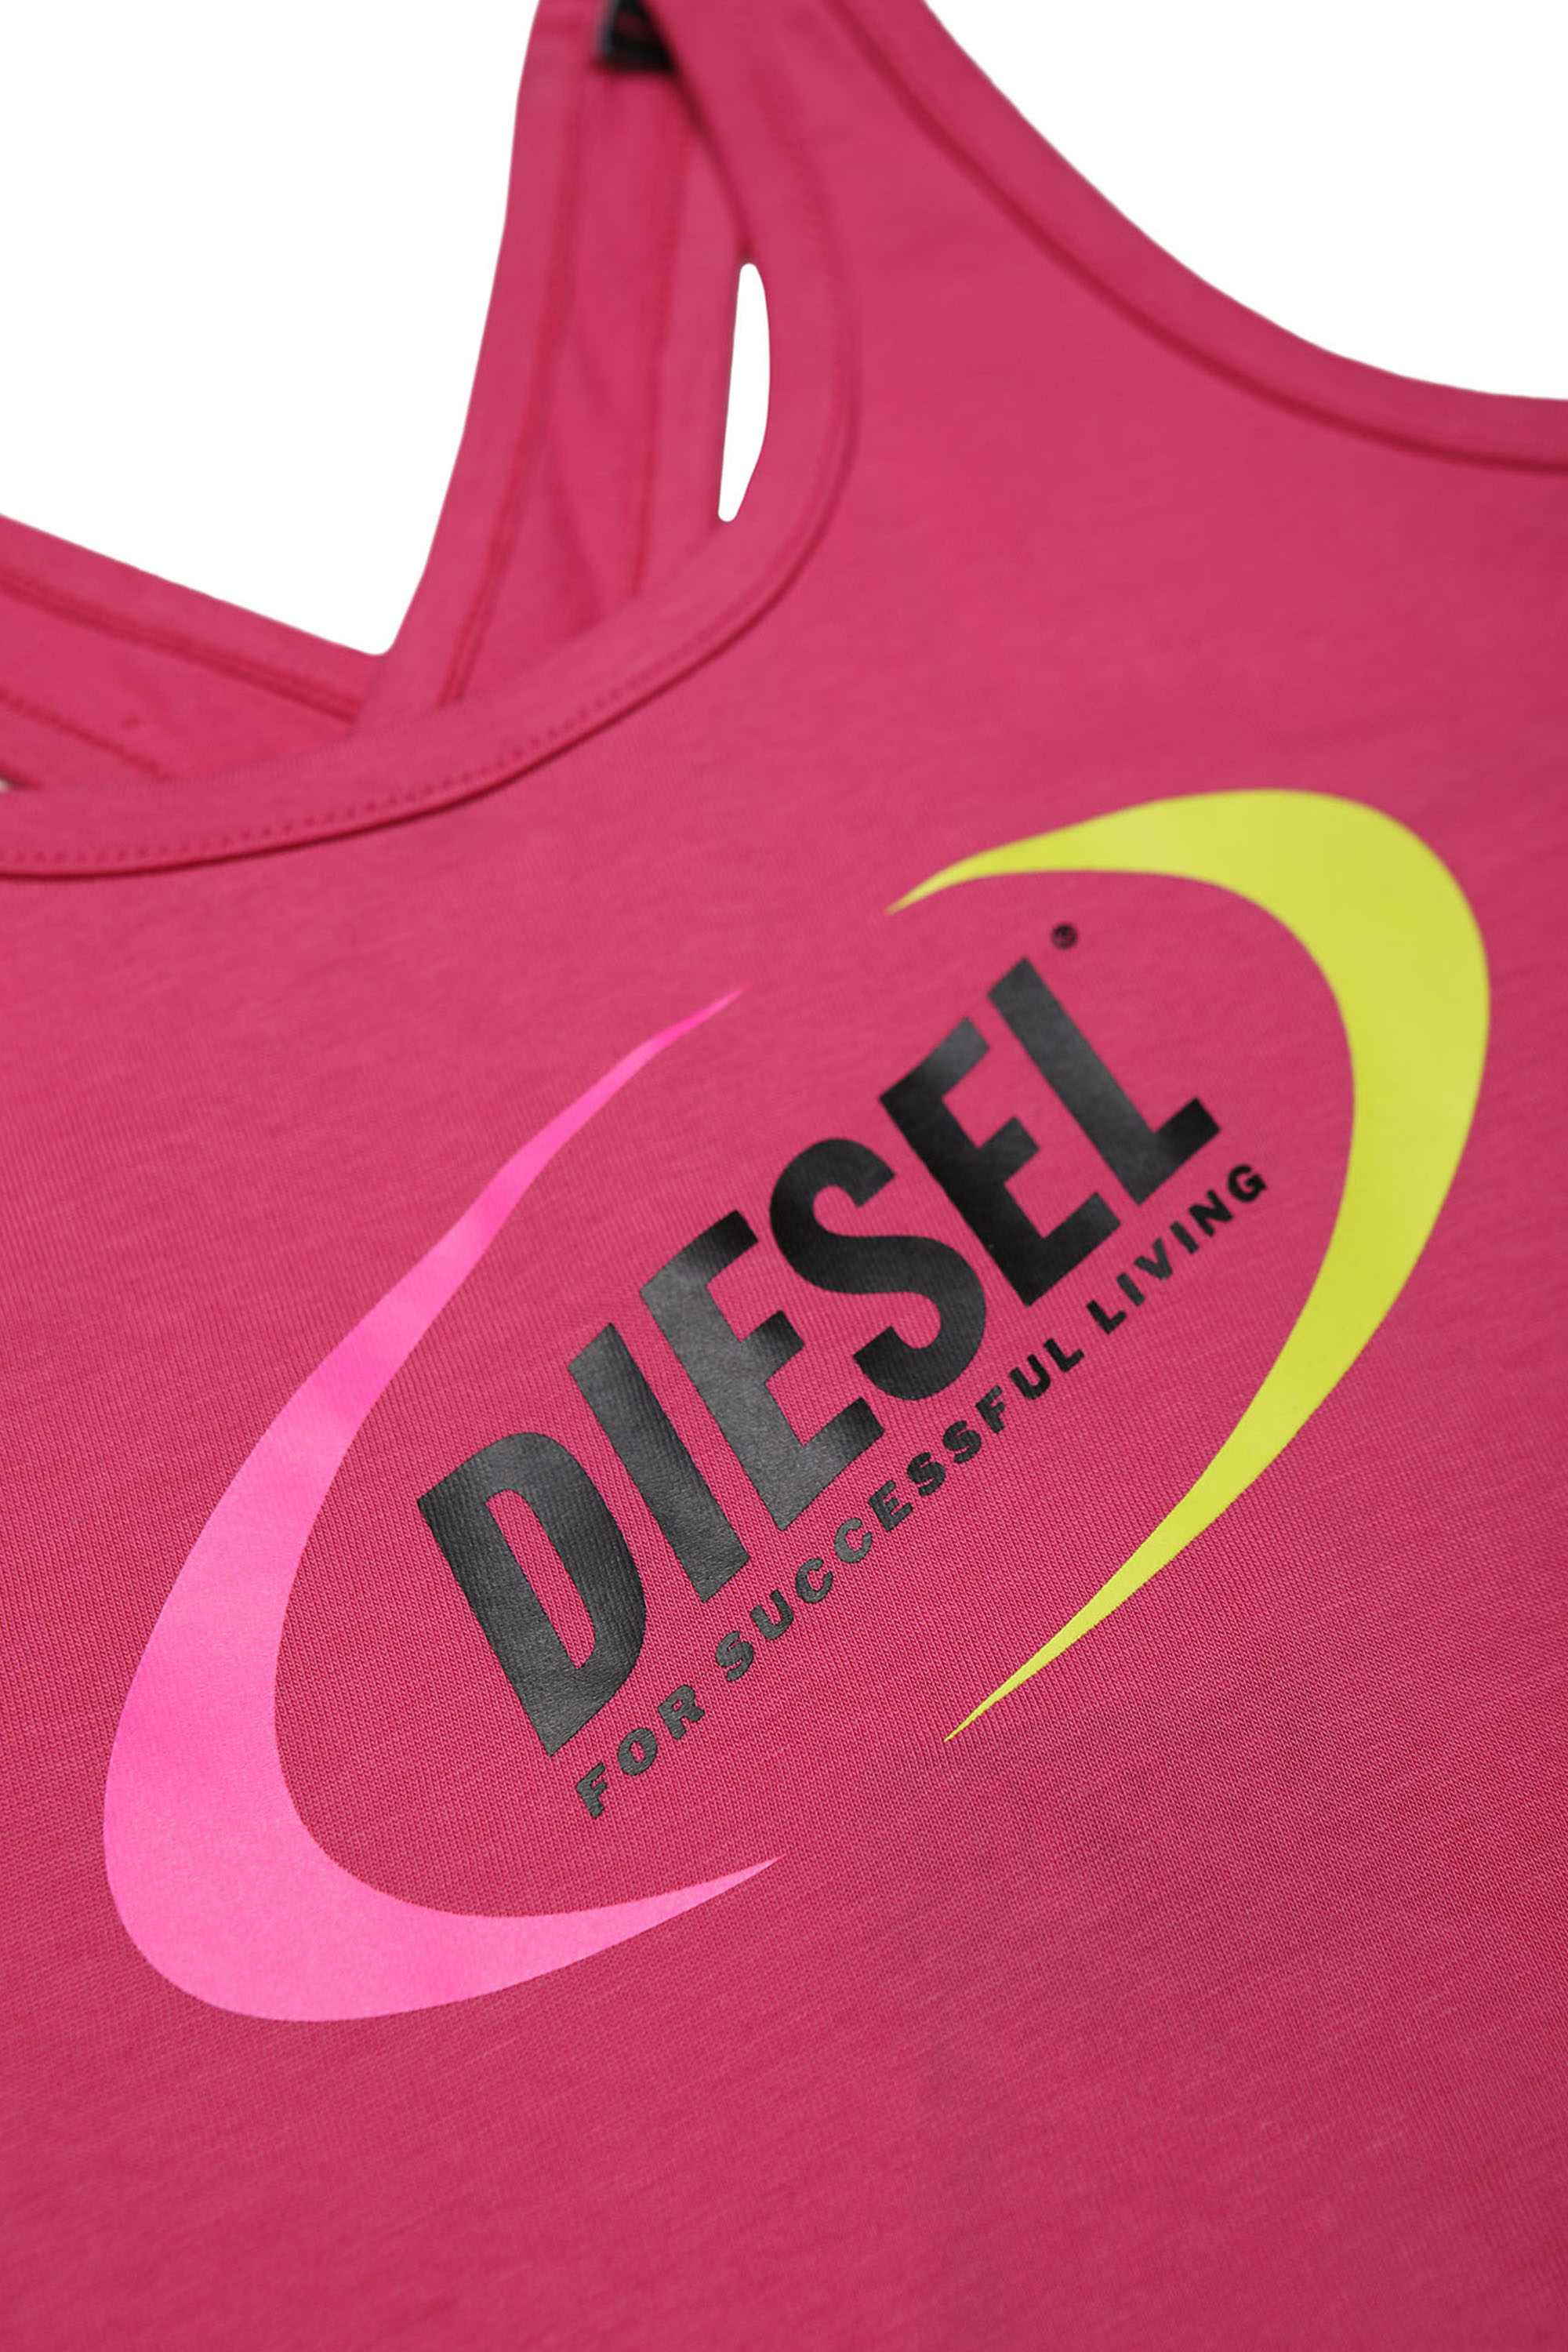 Diesel - MCUDEMATEX, Pink - Image 3